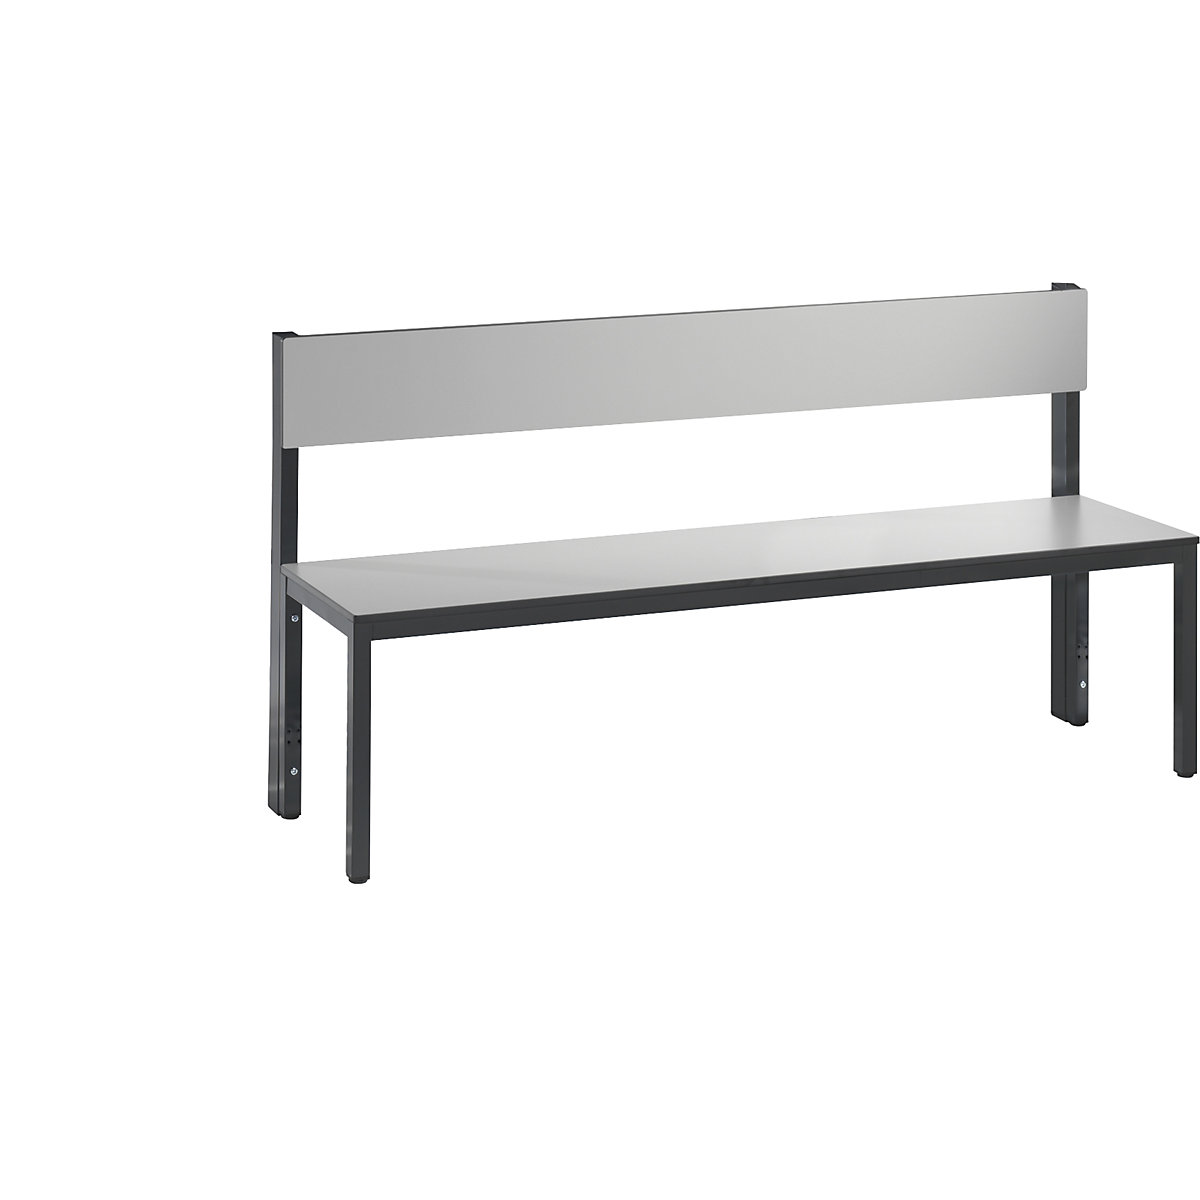 Banc de vestiaire BASIC PLUS simple face – C+P, surface de l'assise en stratifié HPL, mi-haut, longueur 1500 mm, gris argent-4